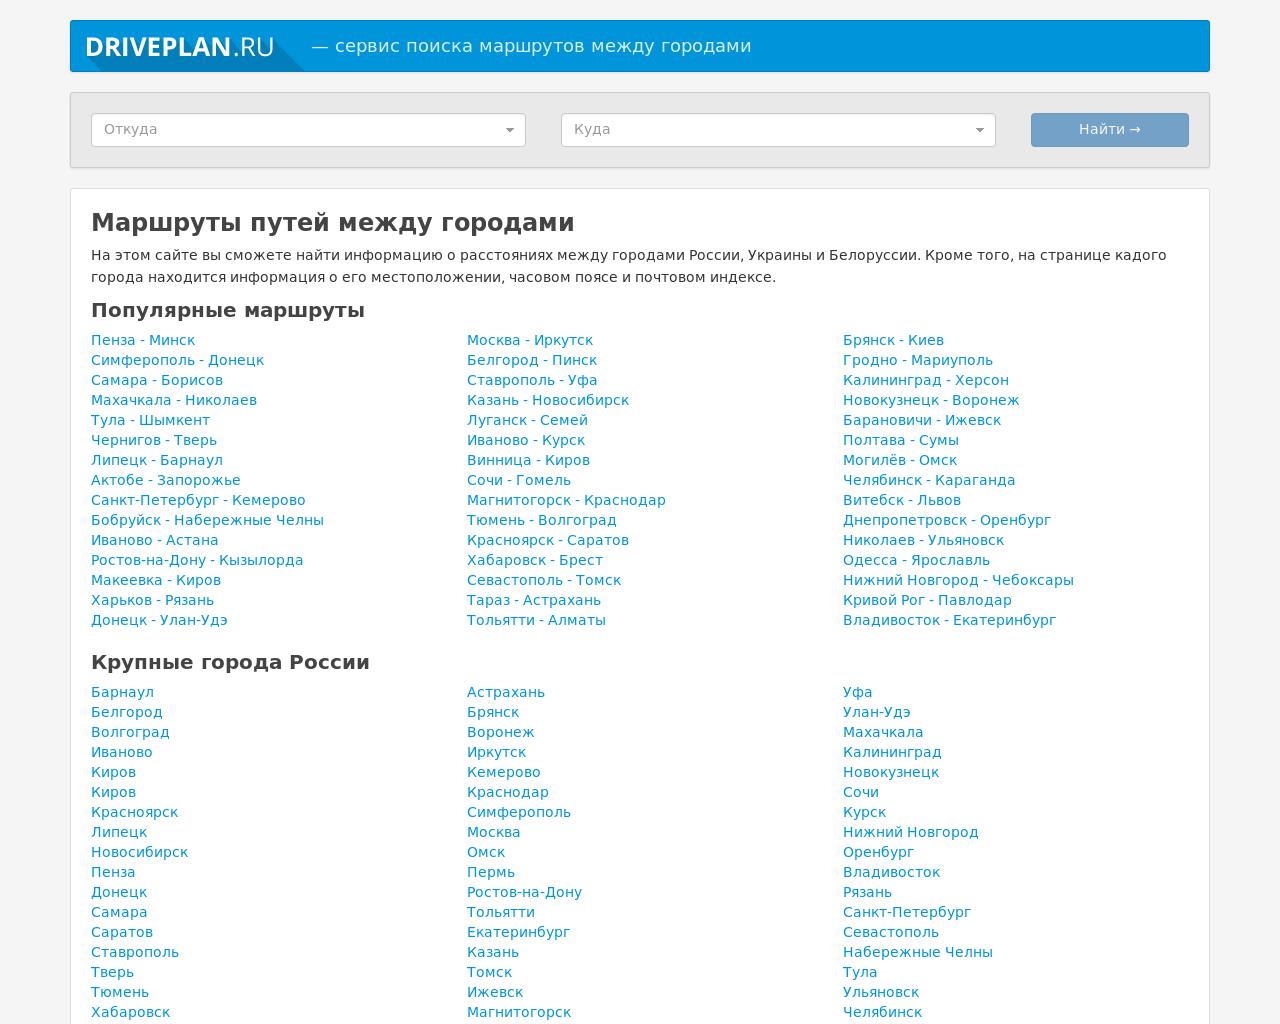 Изображение сайта driveplan.ru в разрешении 1280x1024